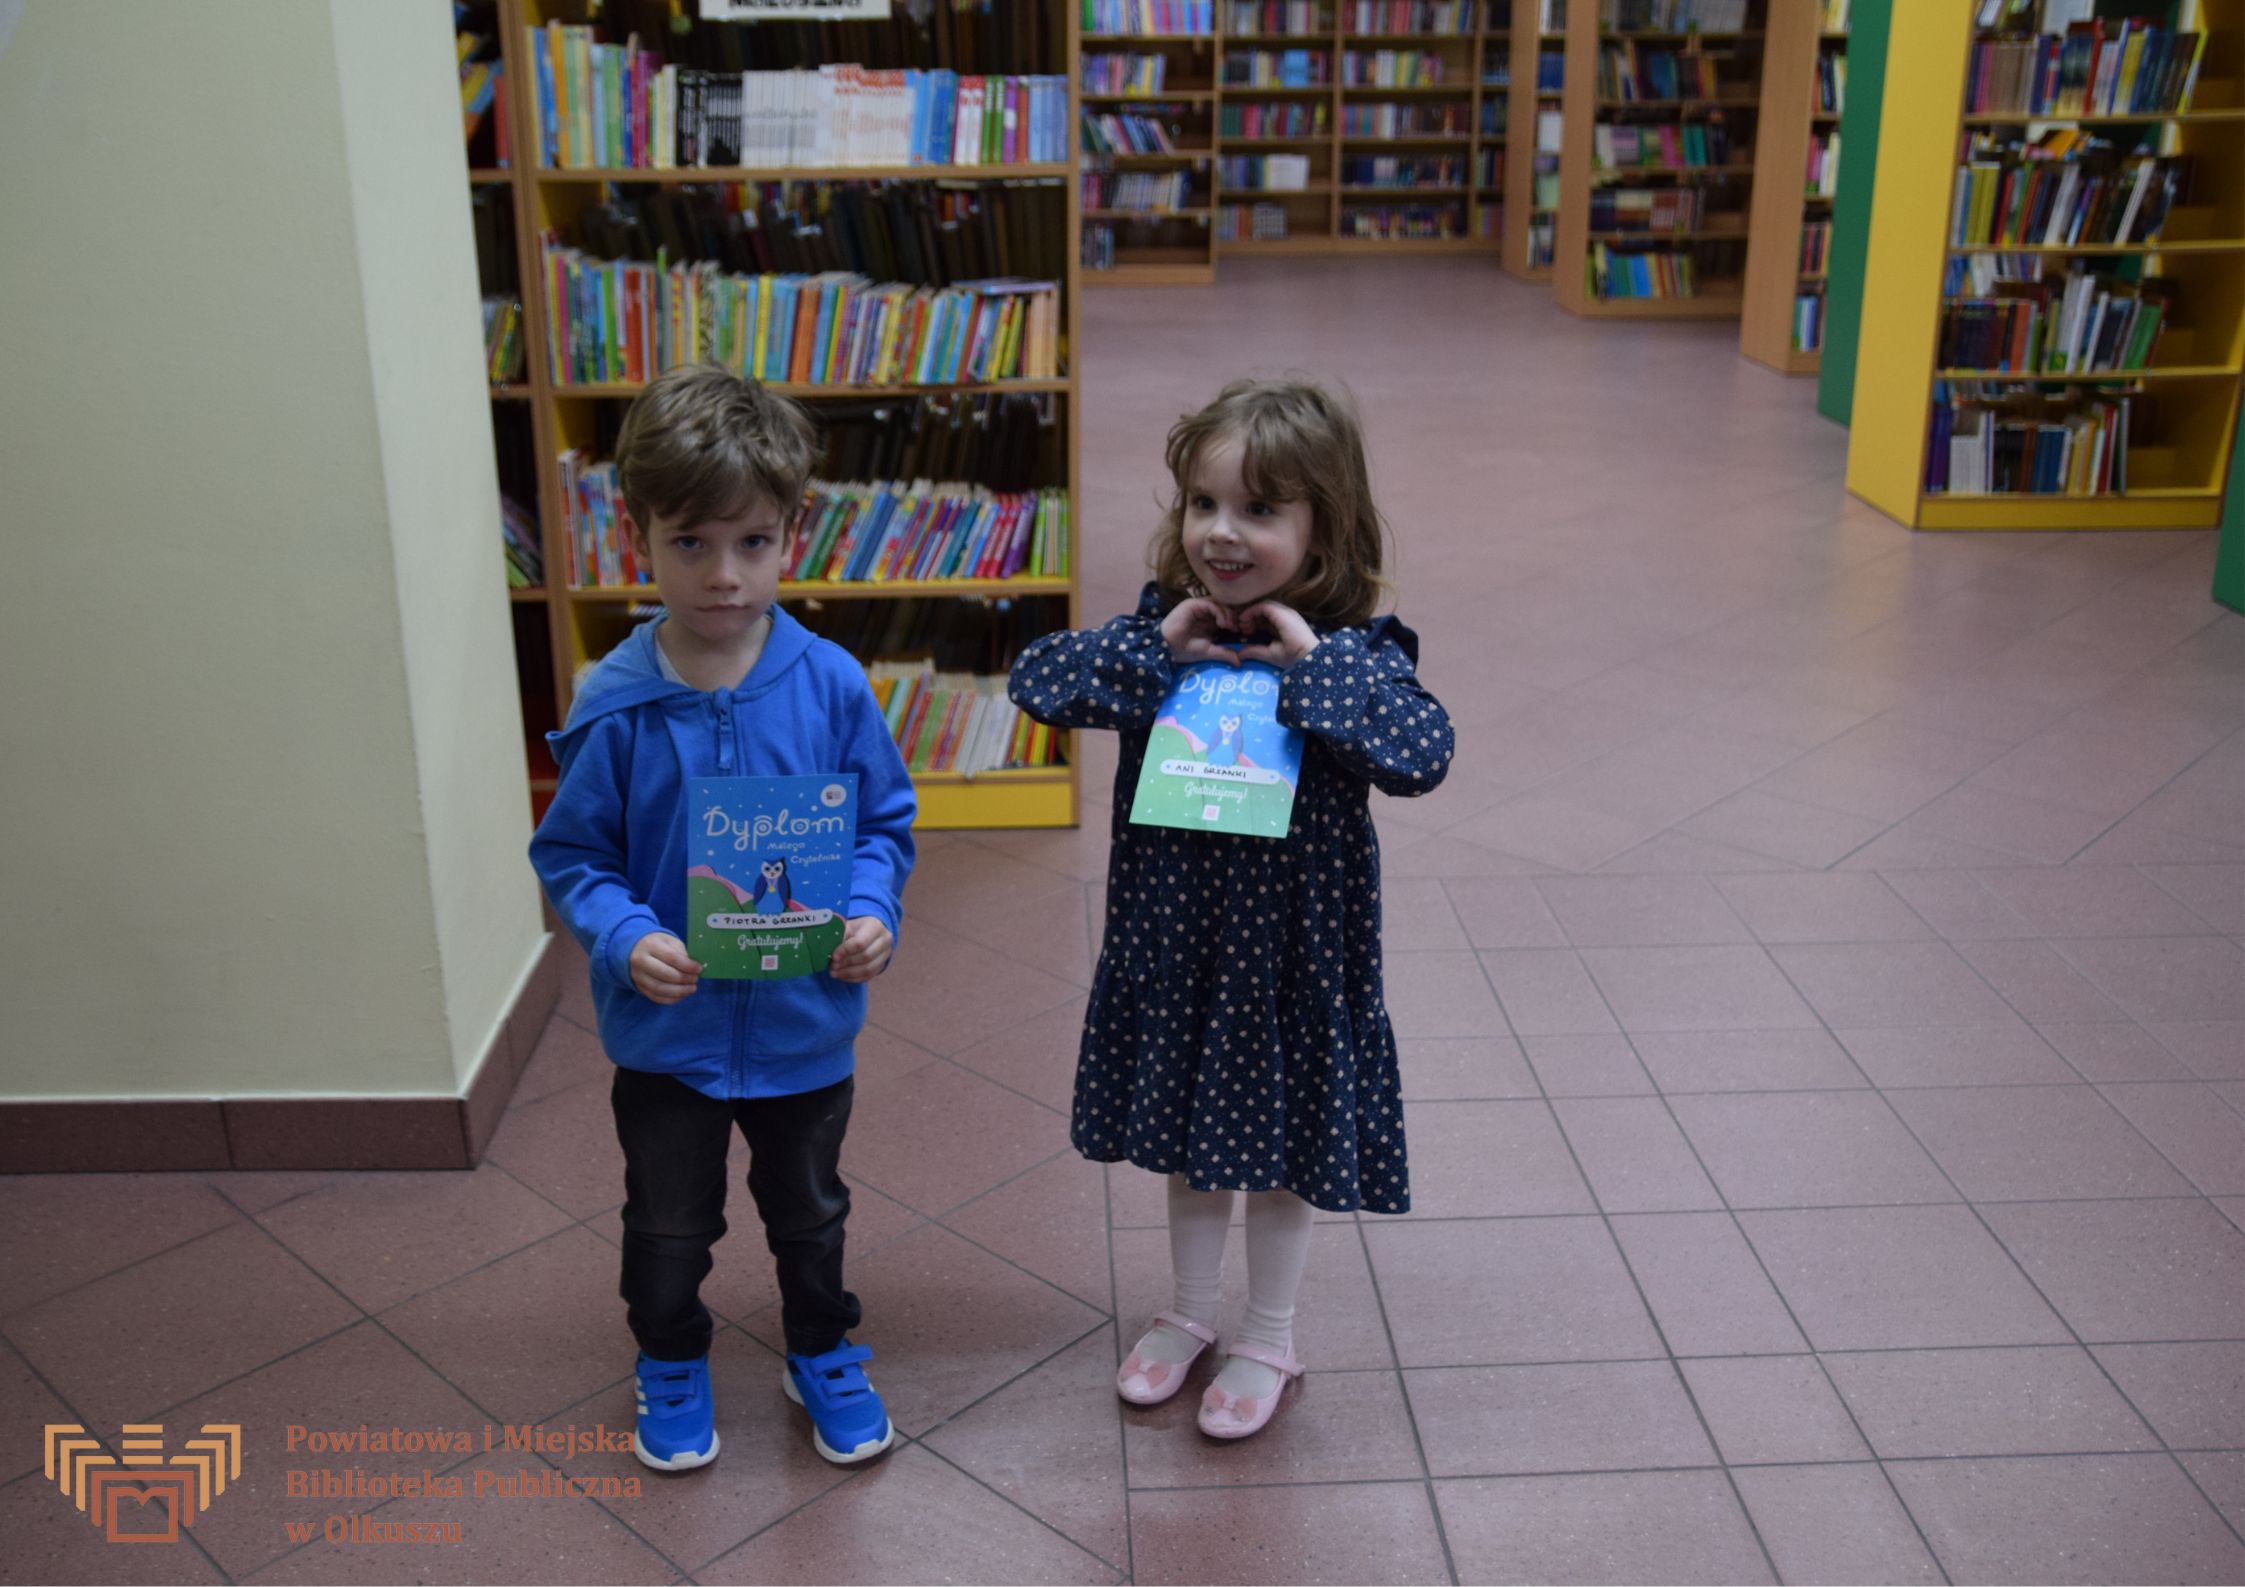 Na pierwszym planie chłopczyk i dziewczynką, trzymający dyplom akcji MAŁA KSIĄŻKA – WIELKI CZŁOWIEK, w tle regały z książkami